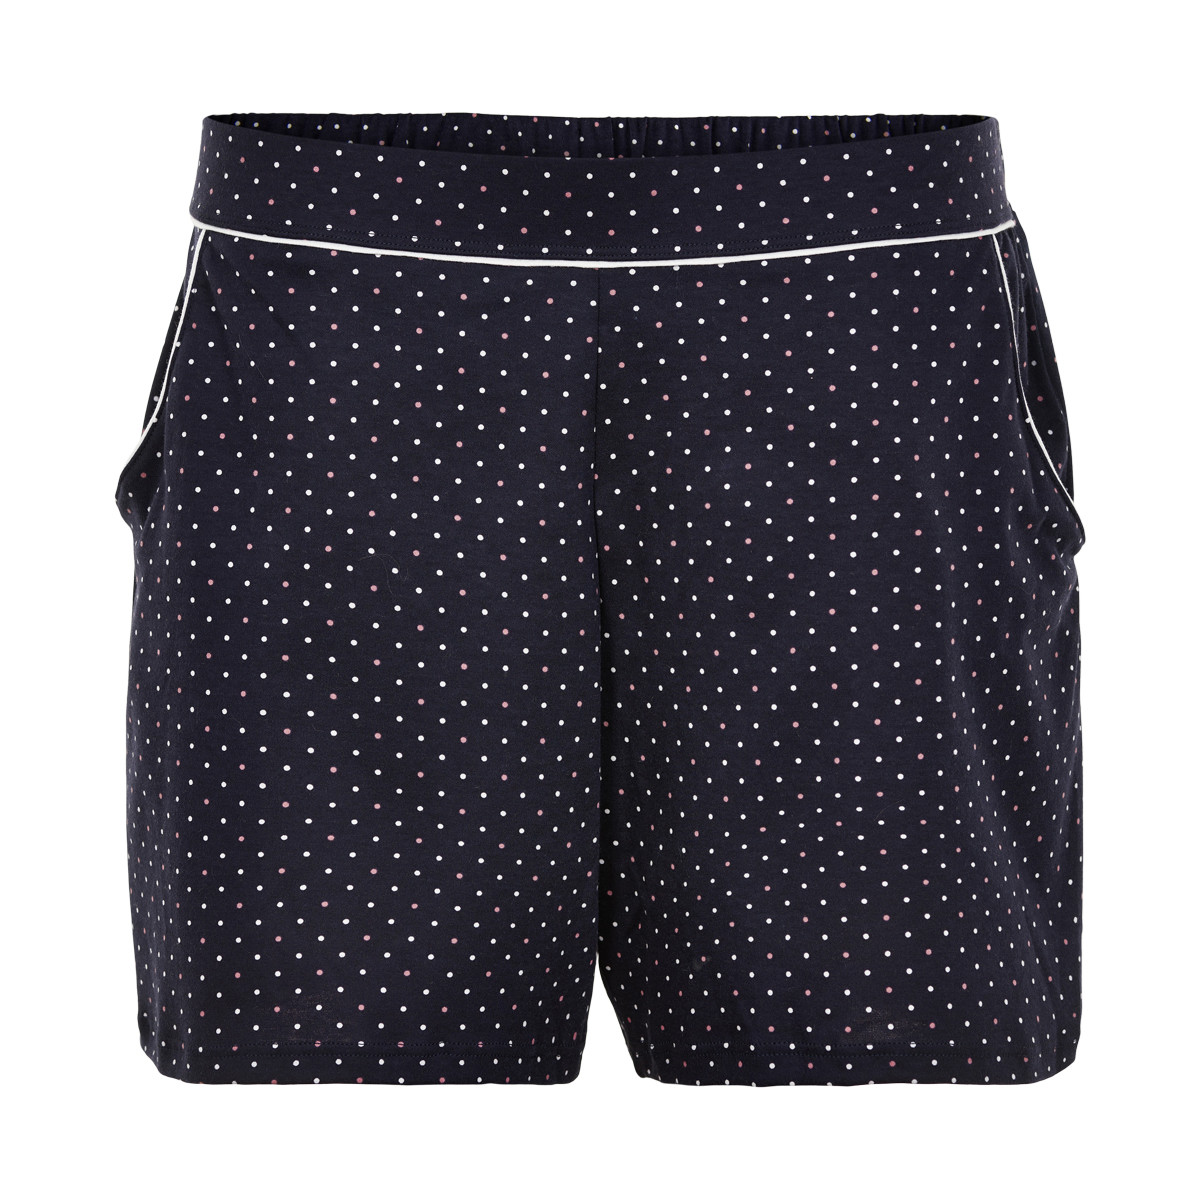 #2 - Calida Shorts, Farve: Sort, Størrelse: XS, Dame